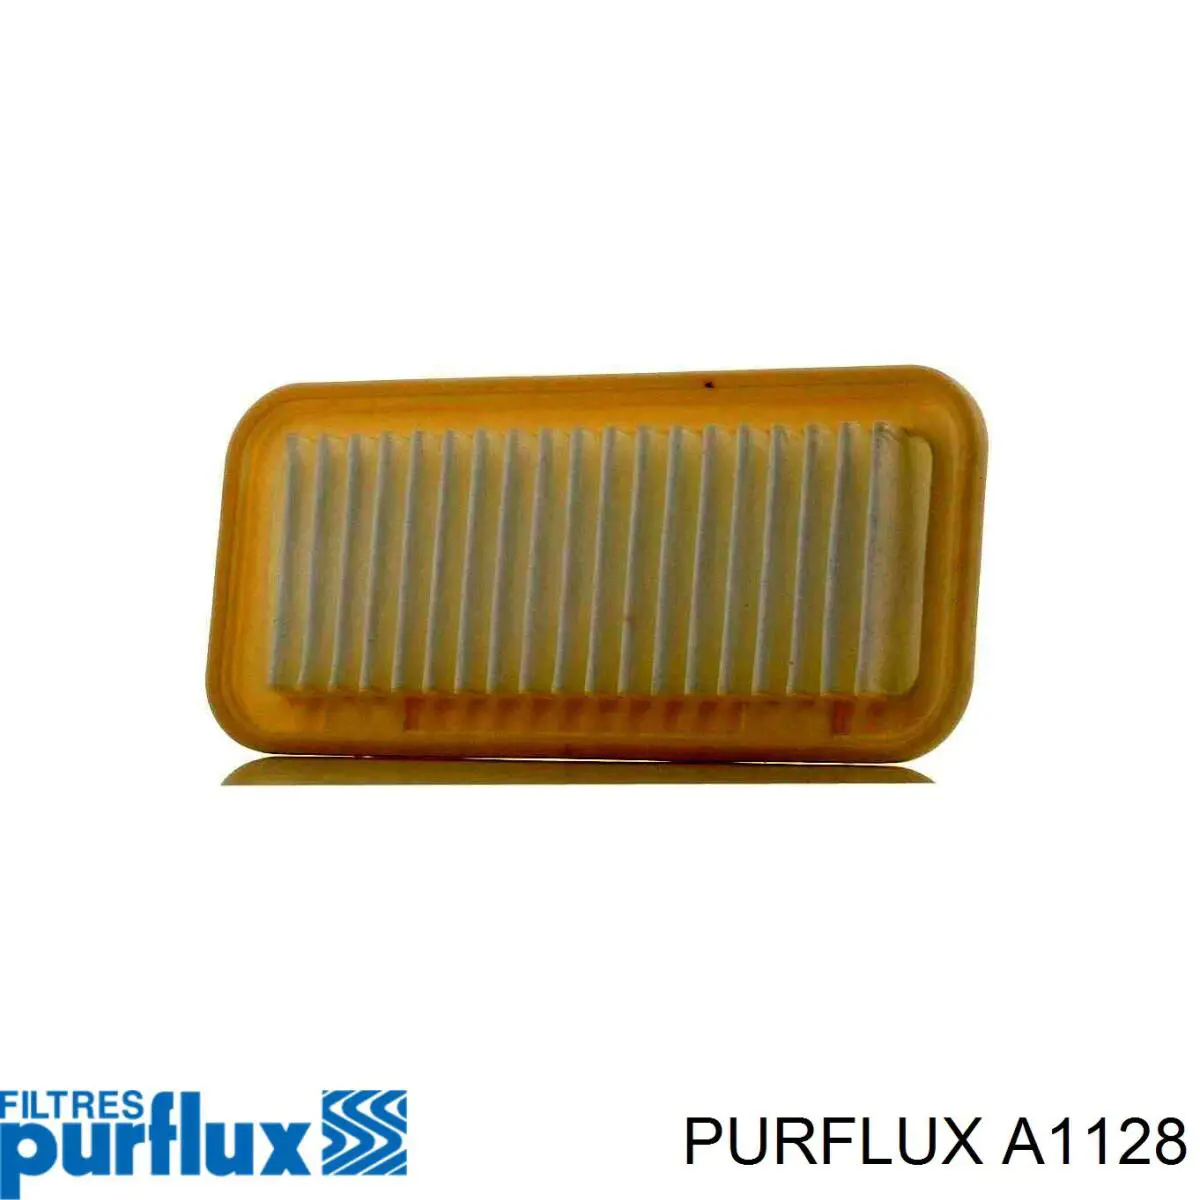 A1128 Purflux filtro de aire